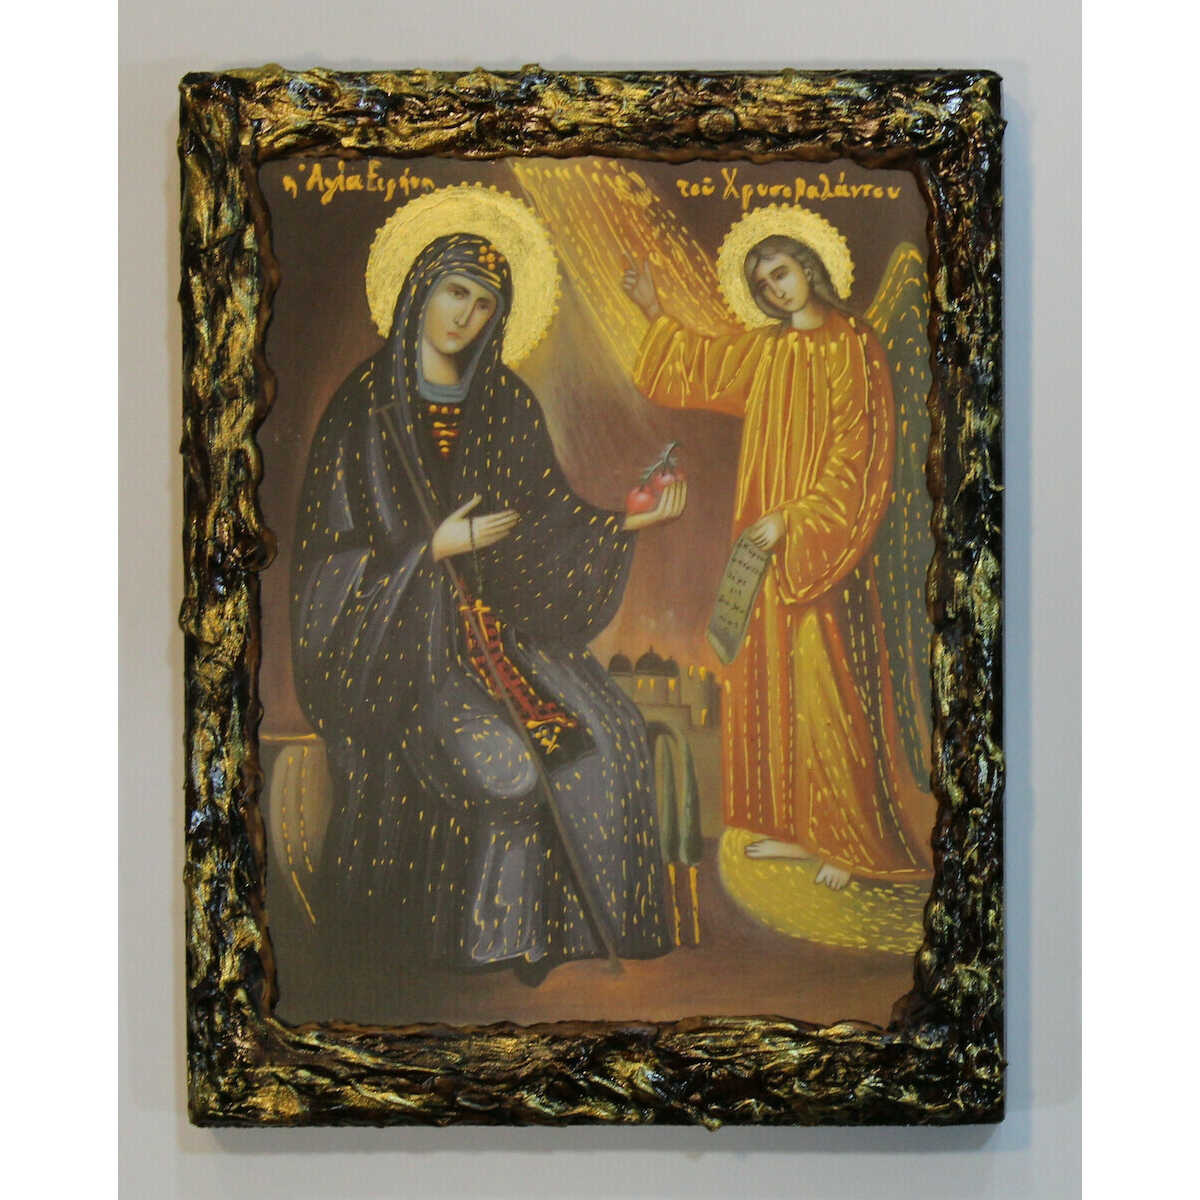 Εικόνα Αγία Ειρήνη Χρυσοβαλάντου με περίγραμμα πάστας διαστάσεις 25×20 ξύλινη